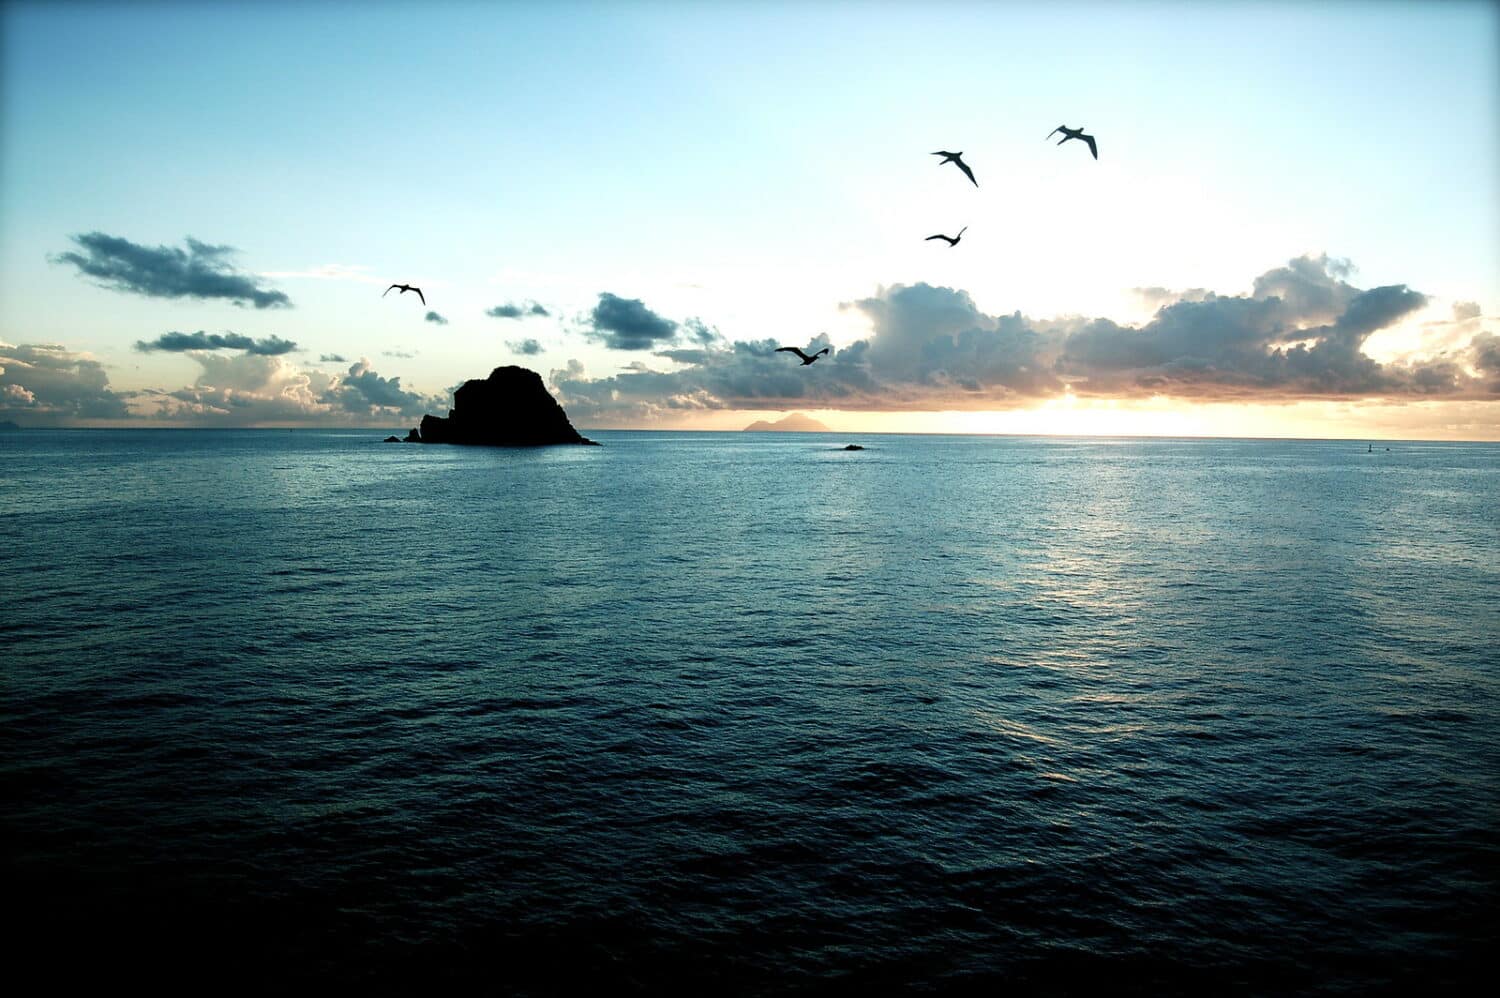 Pôr do sol na praia em St. Barth. Há uma ilhota ao loge, e pássaros voam acima. Há poucas nuvens no céu, que está azul e laranja. - Foto: Keith Robinson via Flickr